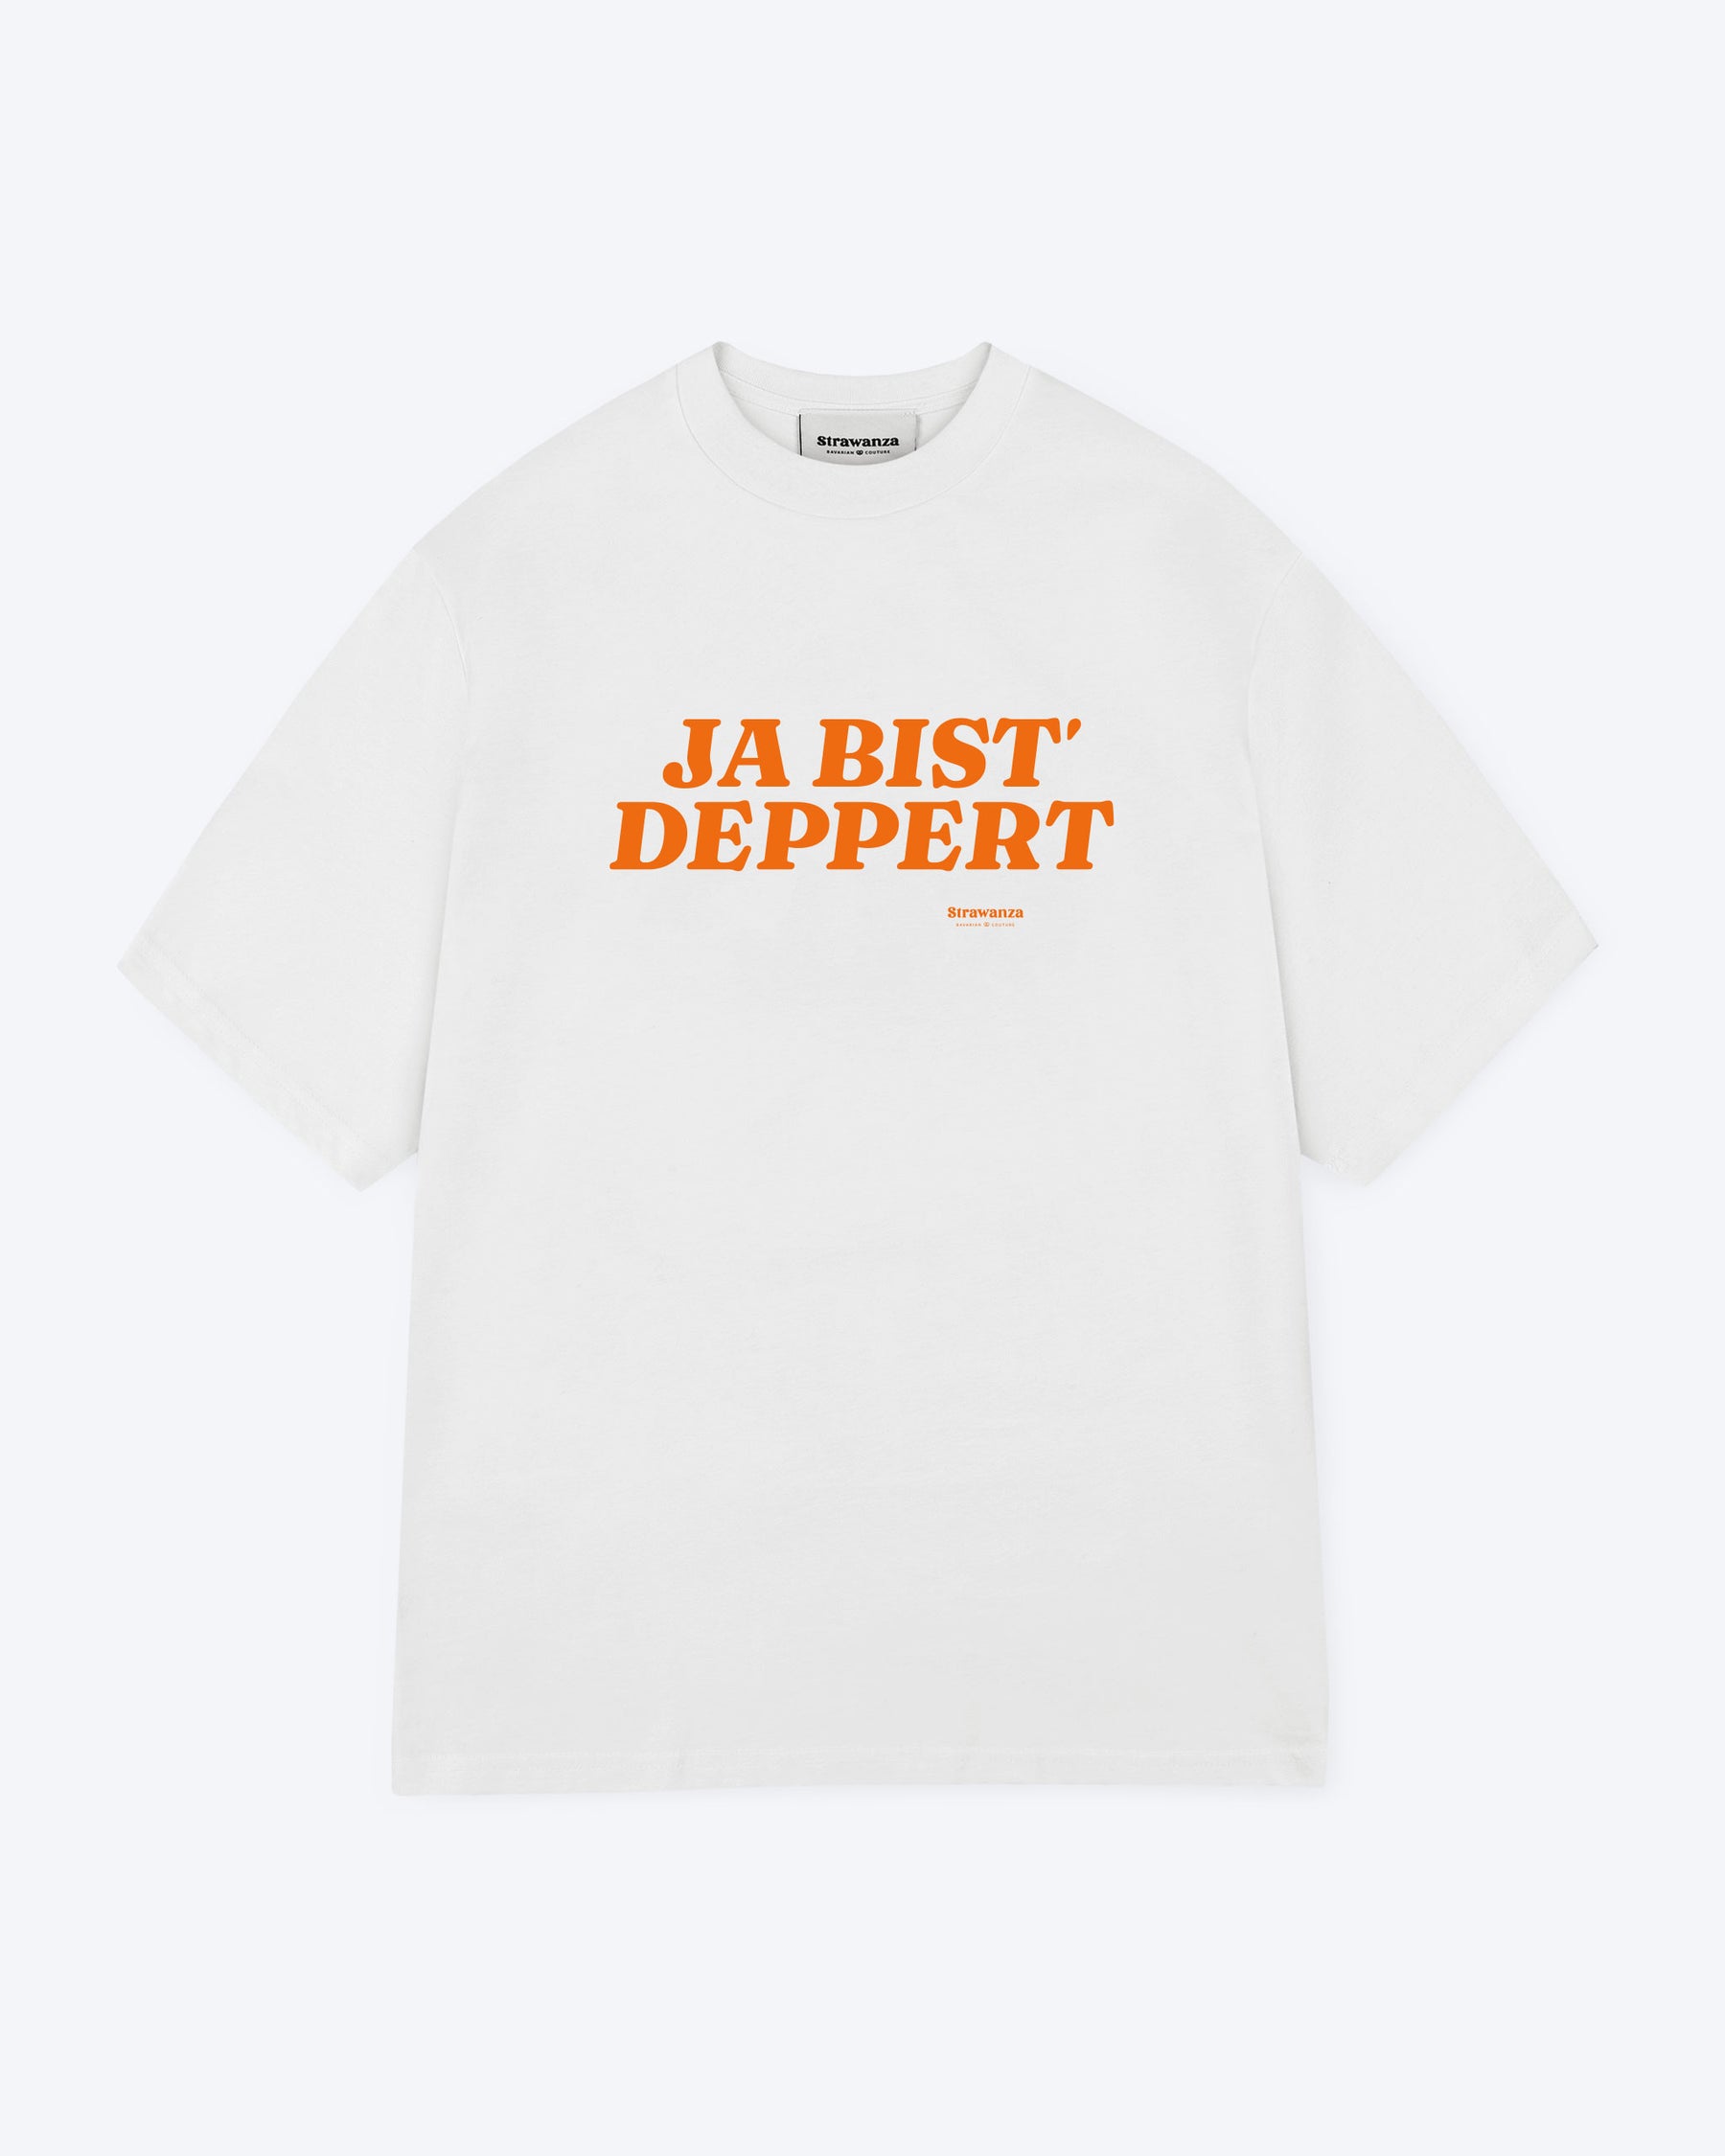 Ein weißes T-Shirt mit einem orangenen "JA BIST` DEPPERT" Schriftzug auf Höhe der Brust. 